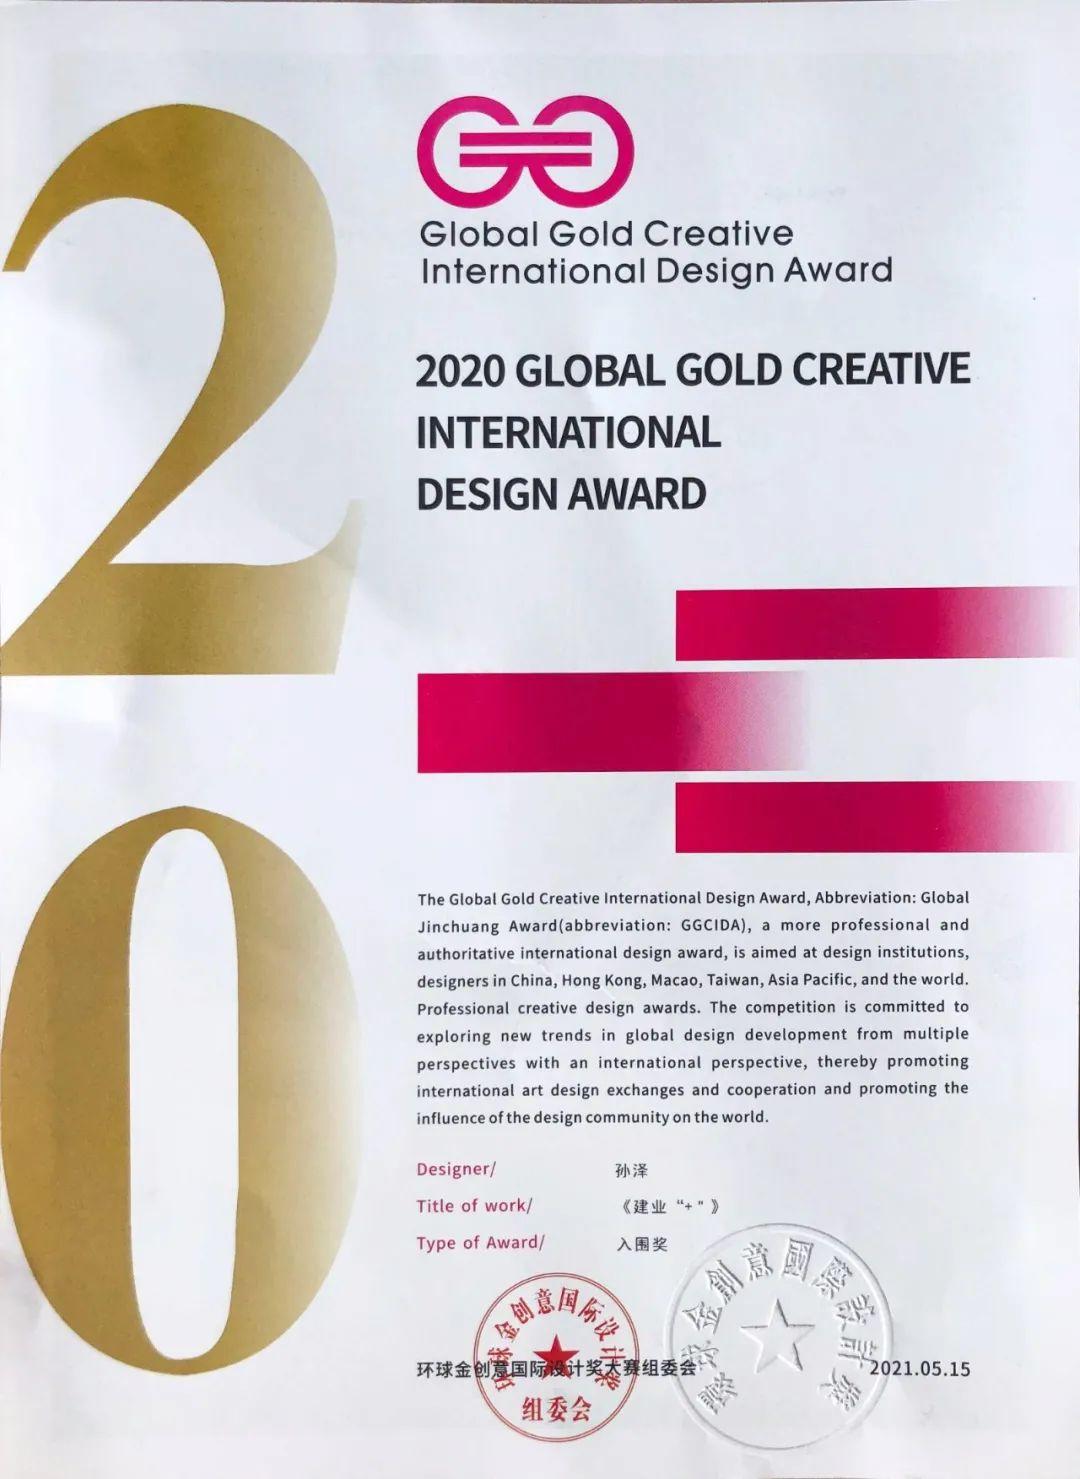 弎格品牌创意机构荣获环球金创意国际设计大奖